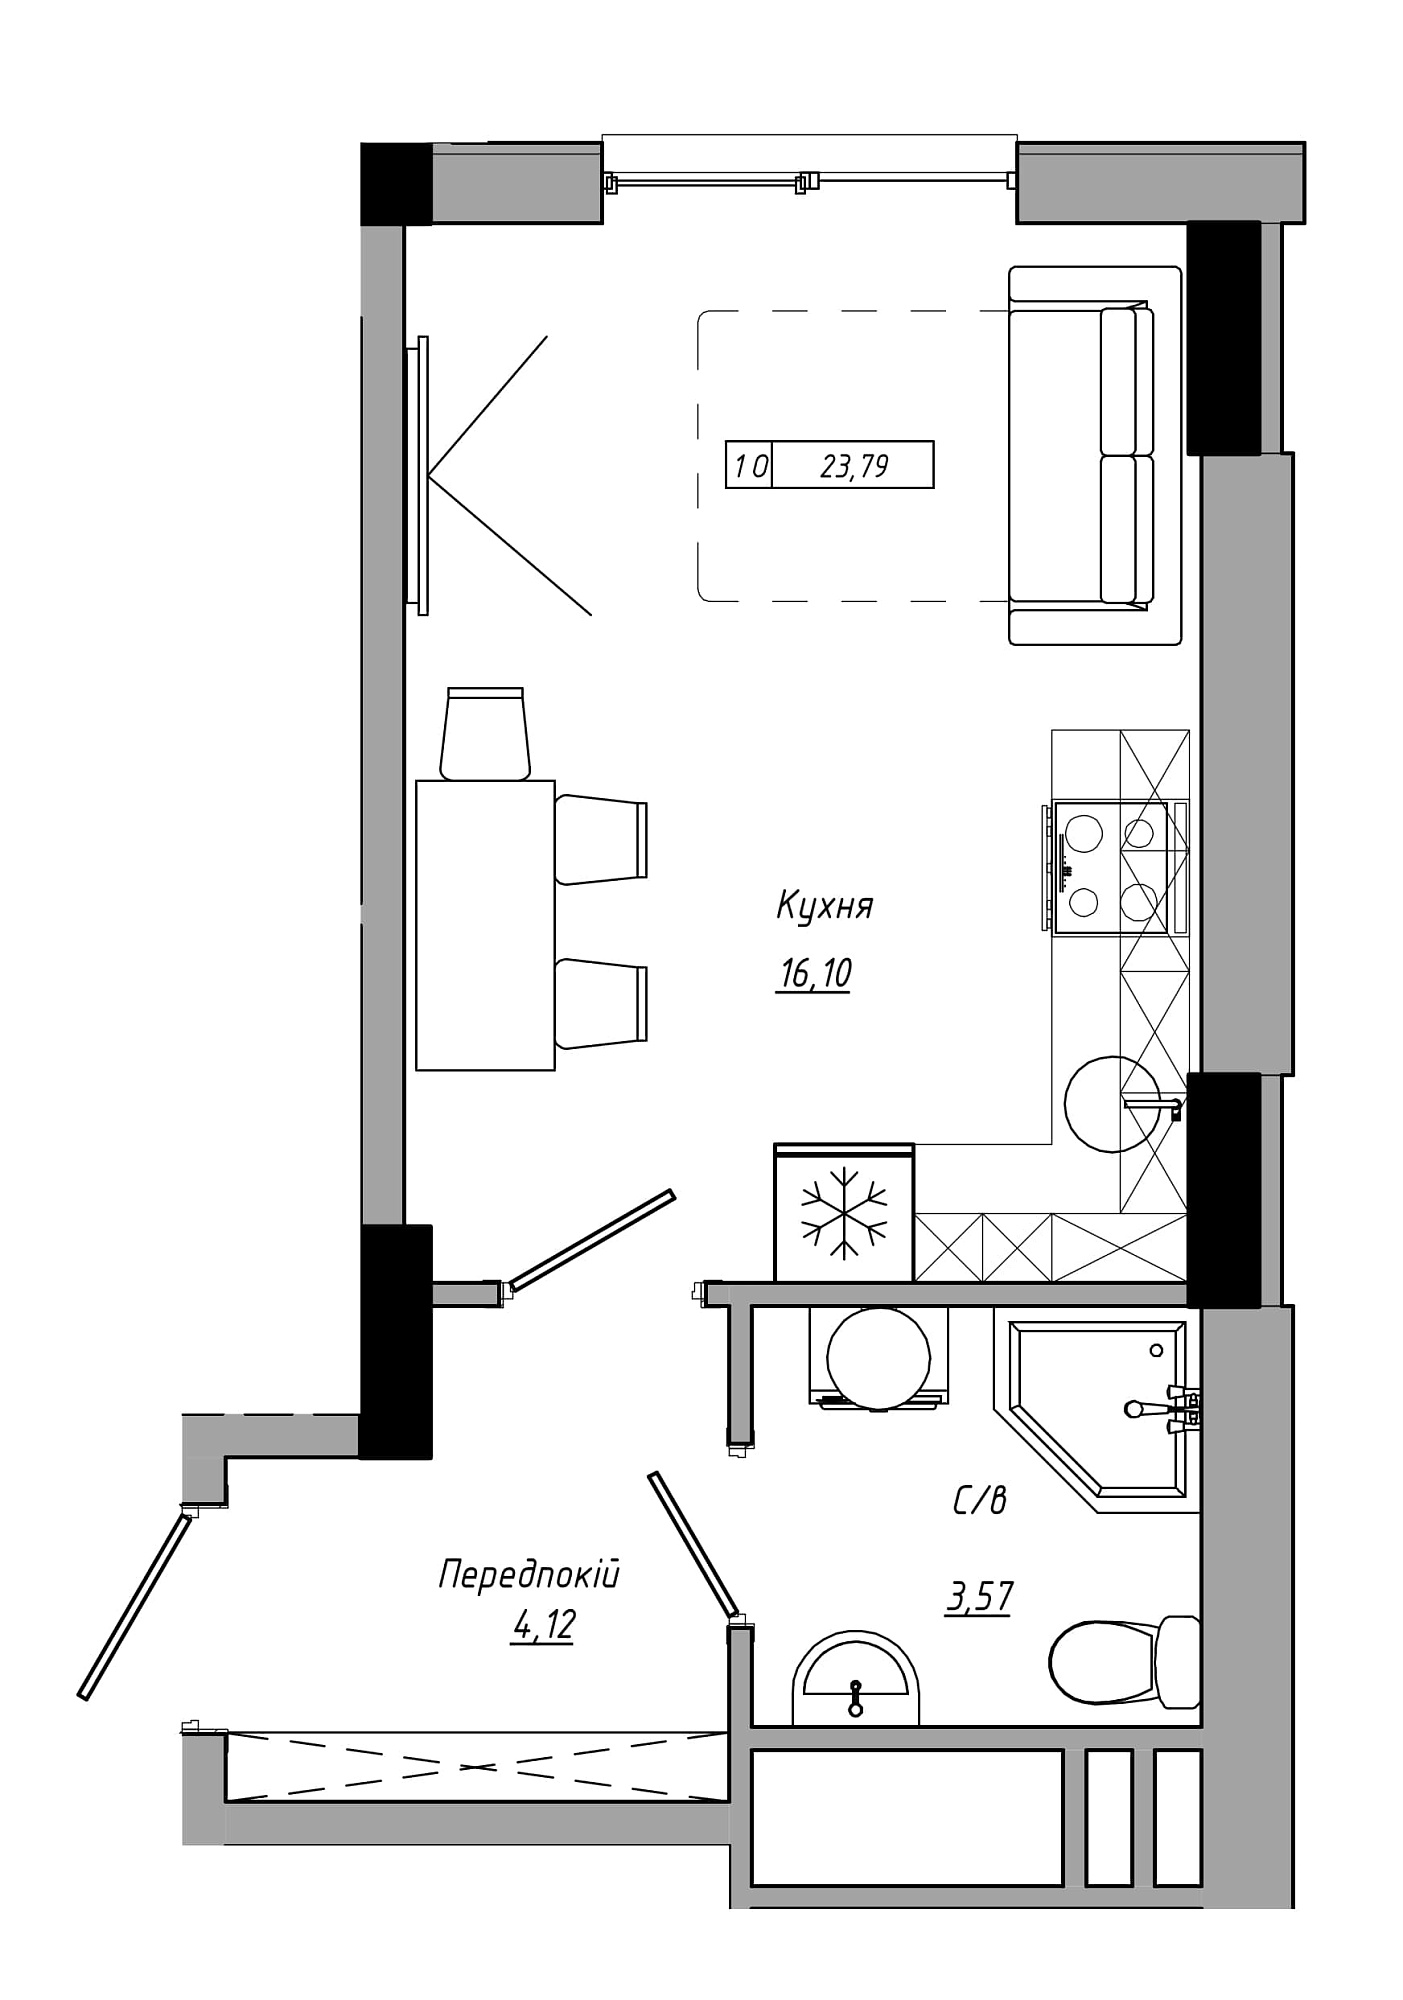 Планування Smart-квартира площею 23.79м2, AB-21-11/00017.